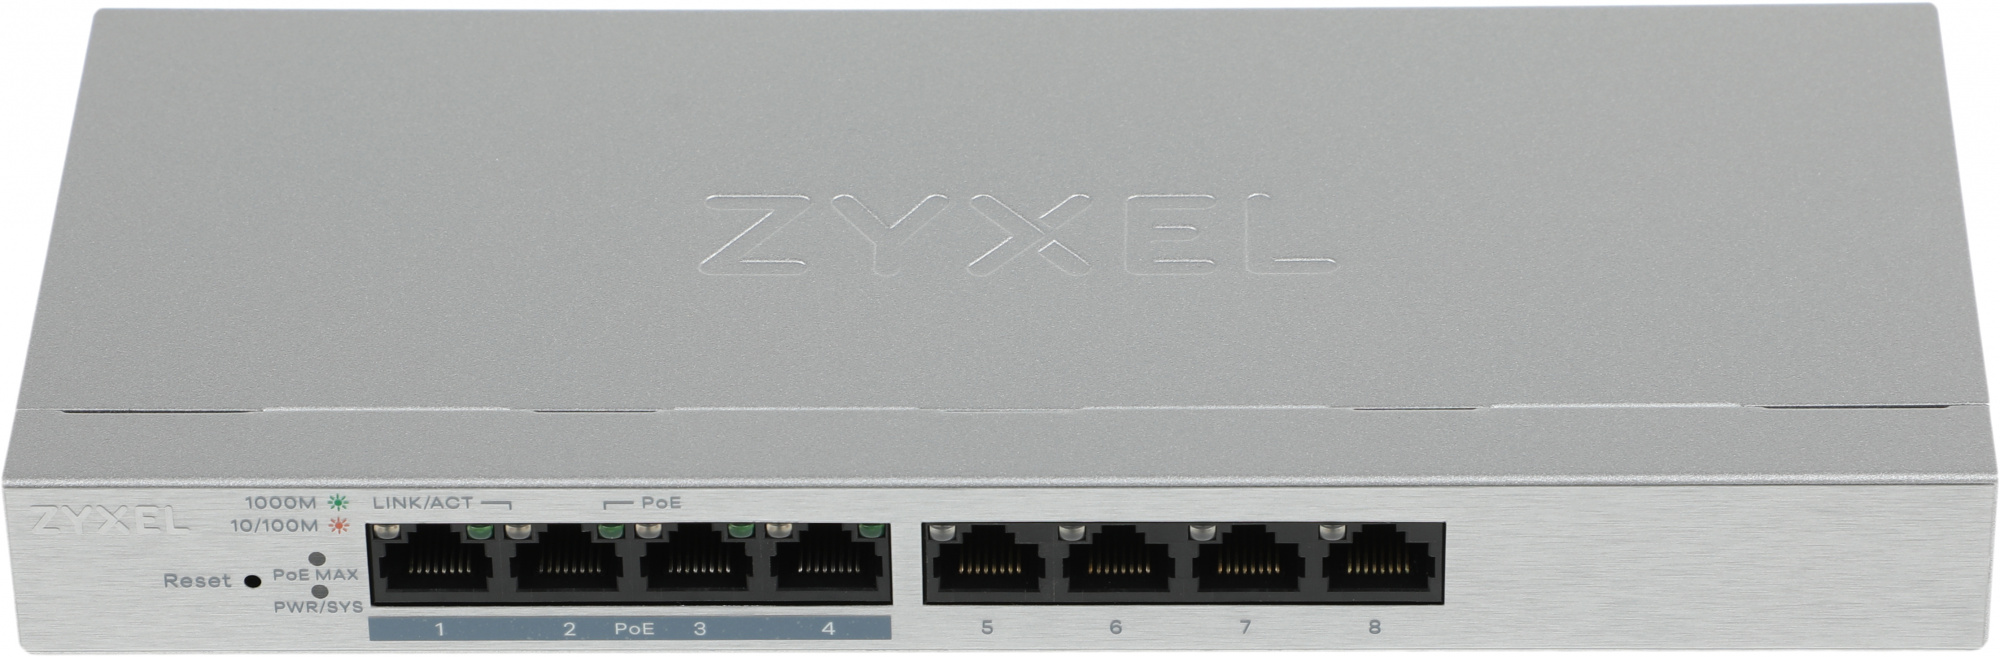 ZYXEL GS1200-8HPV2-EU0101F 